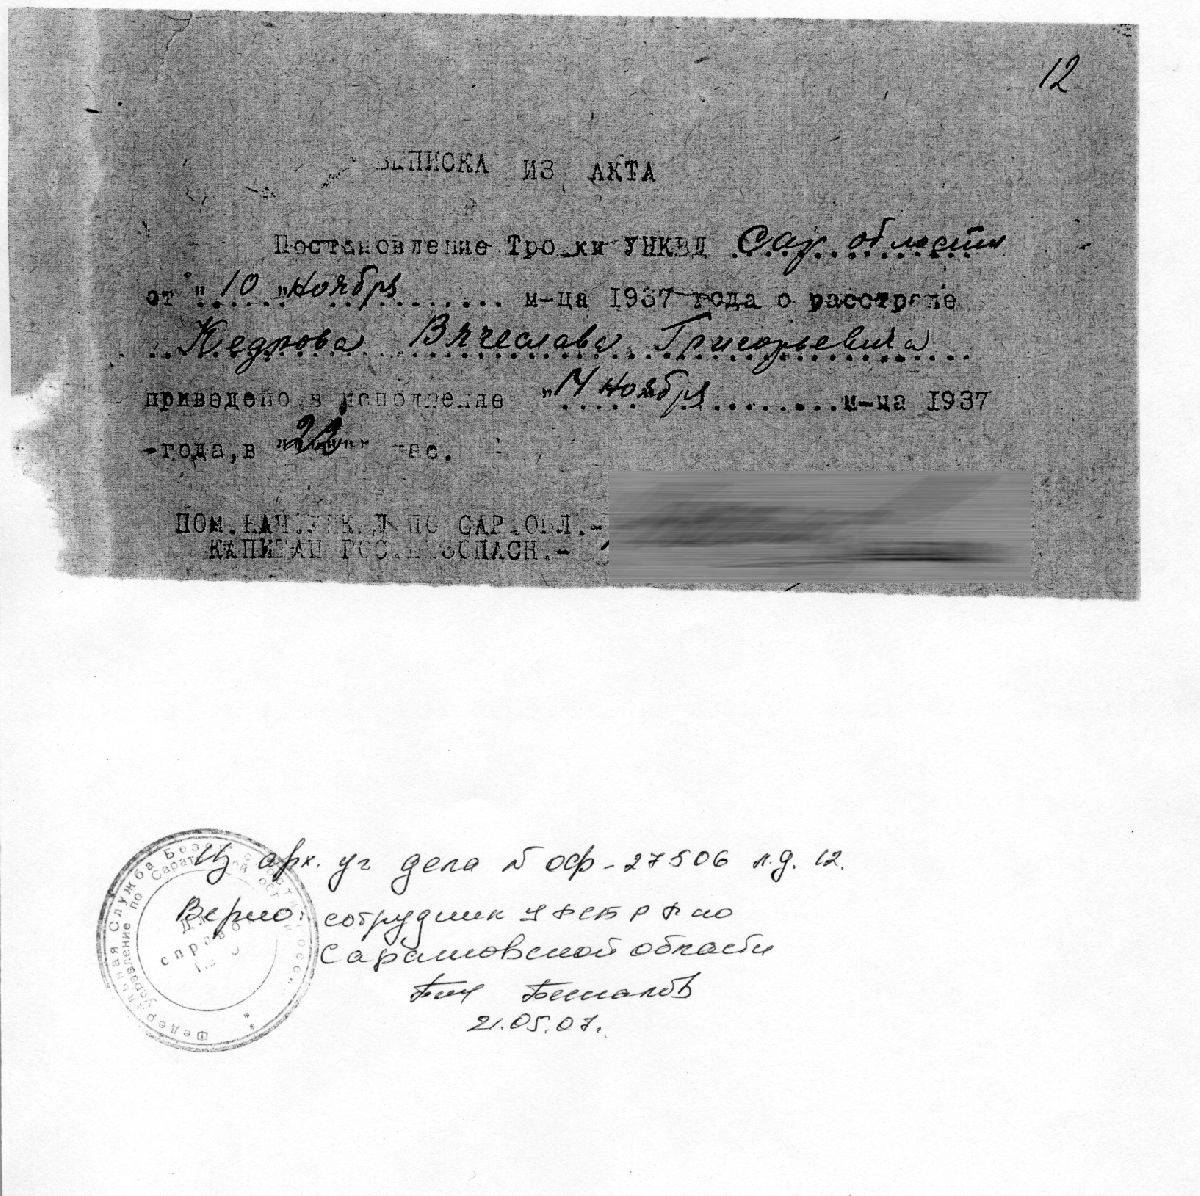 Дело 1937 г. Архив УФСБ по Саратовской области. Арх. № ОФ-27506 (№ 12707).